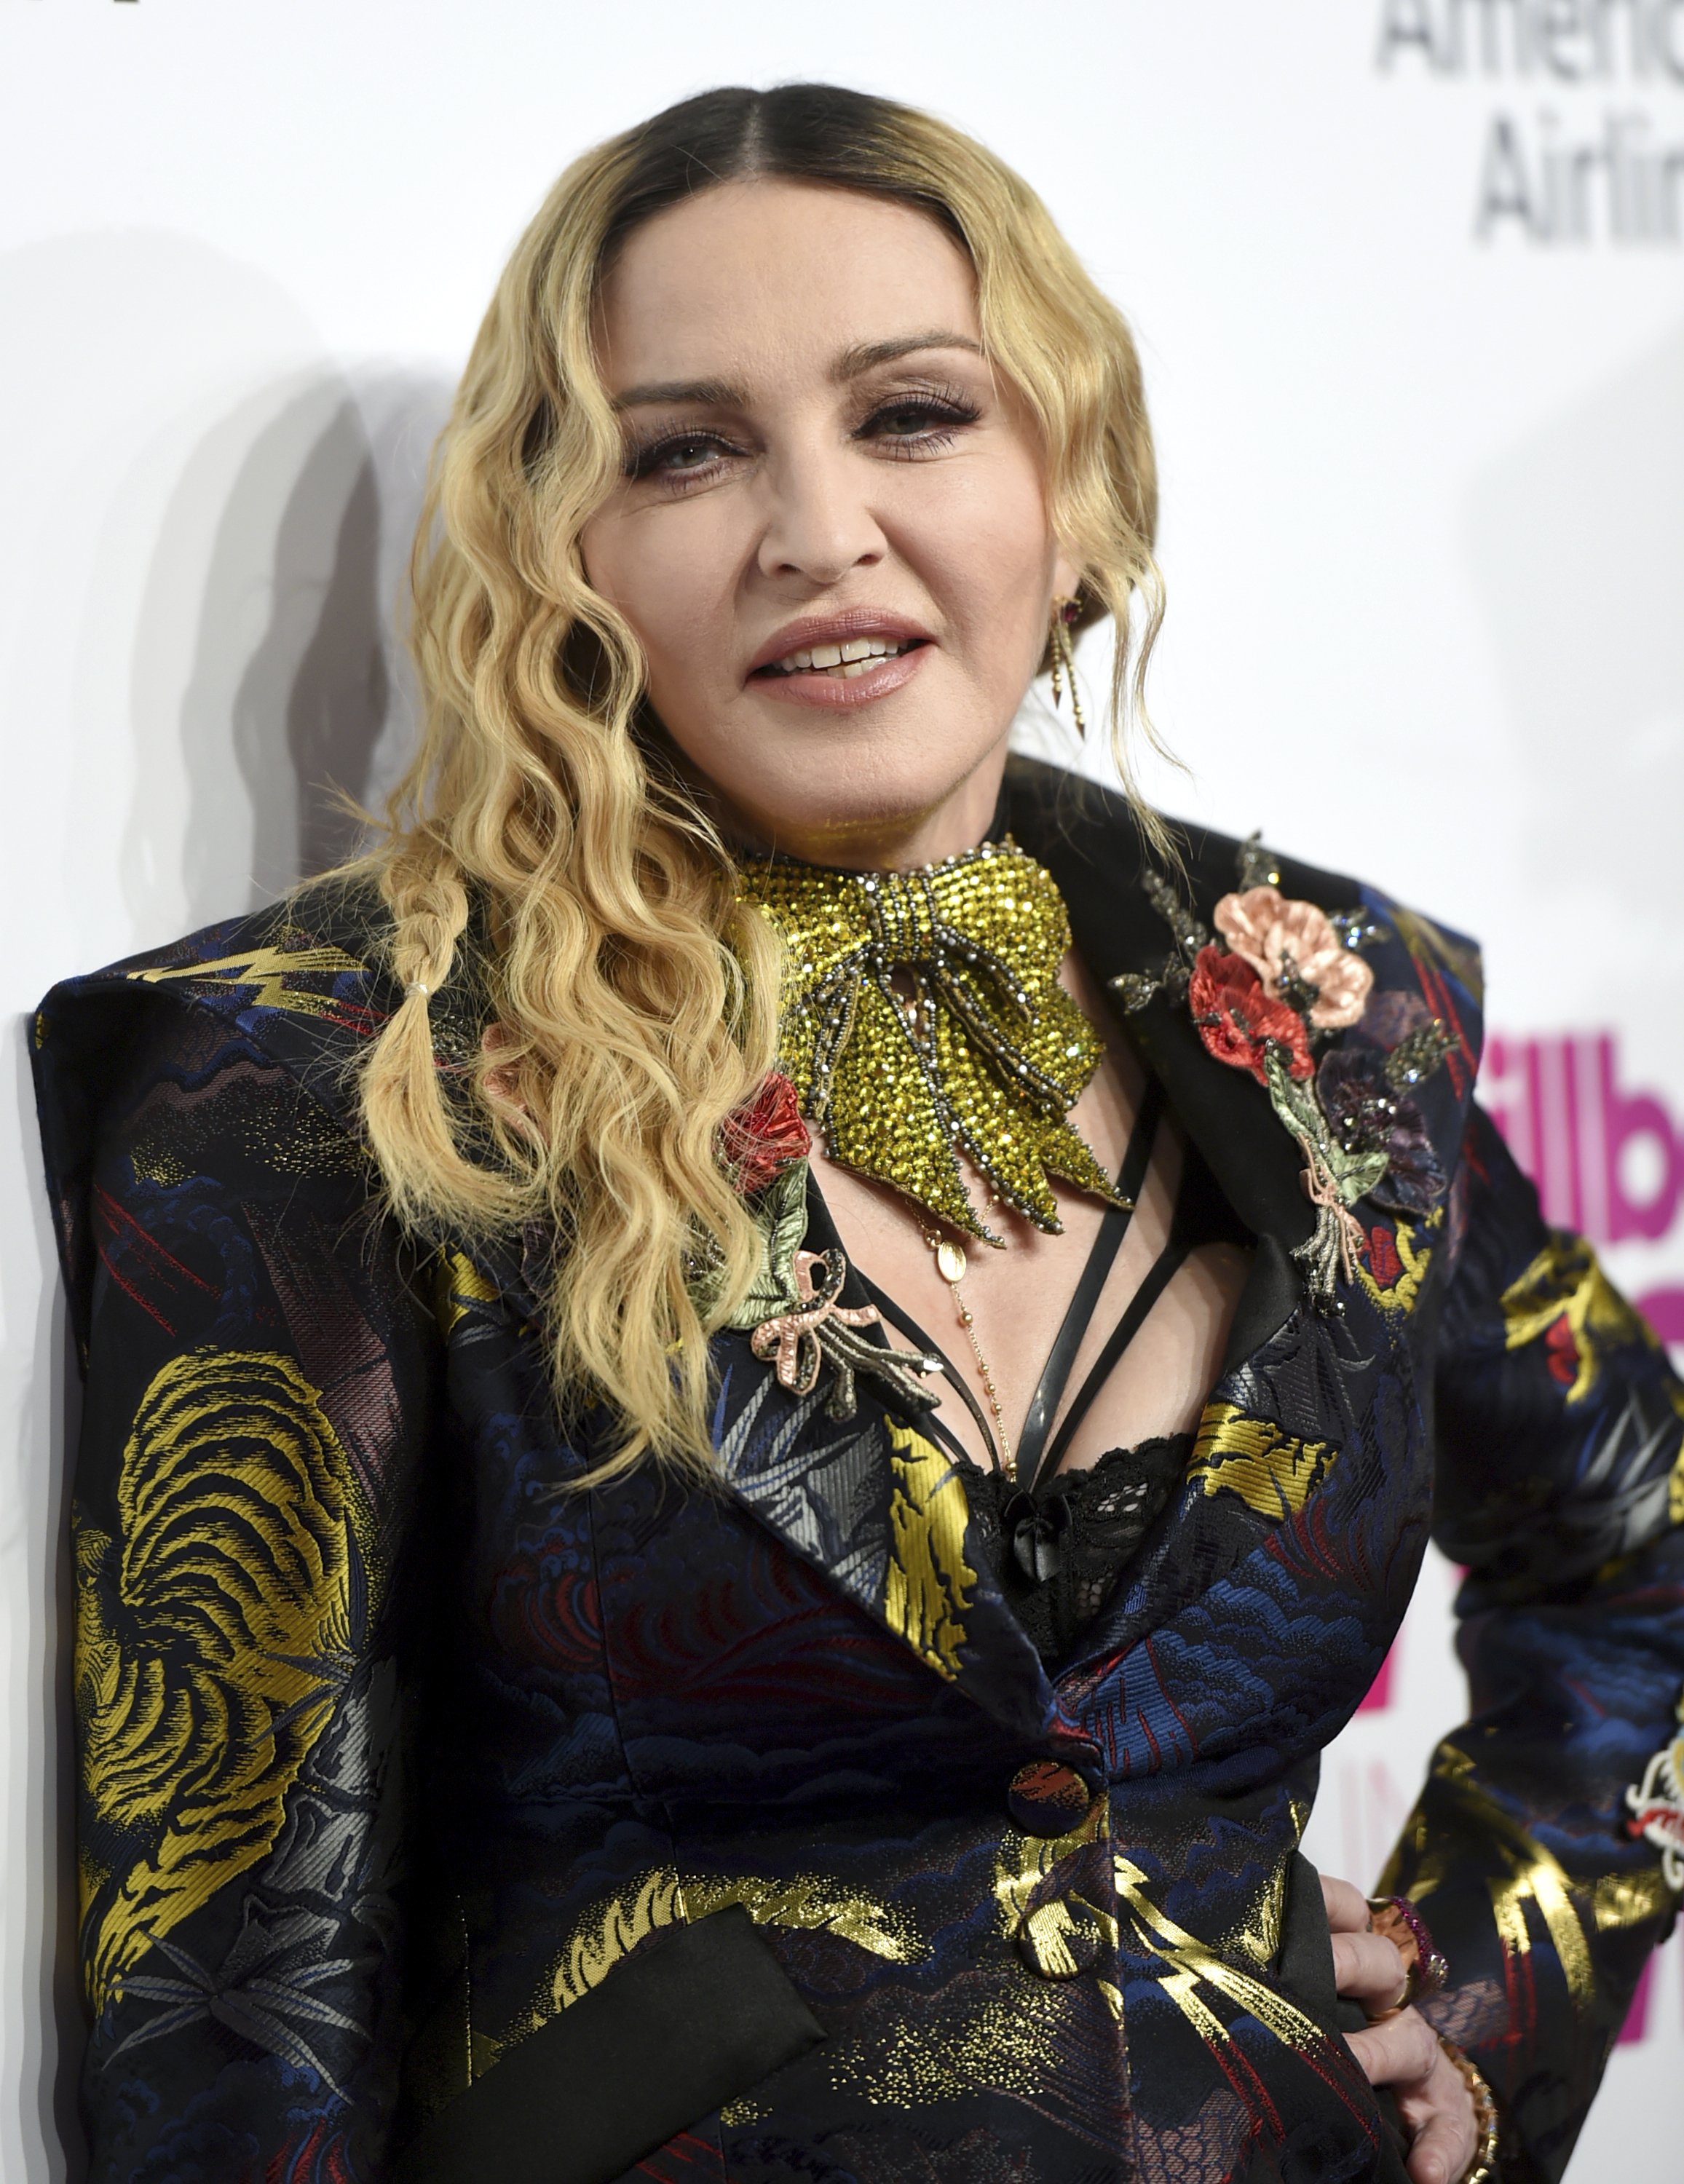 FOTOS Madonna desnuda a los 61 años: pechos al aire y novio de 26 fumando porros